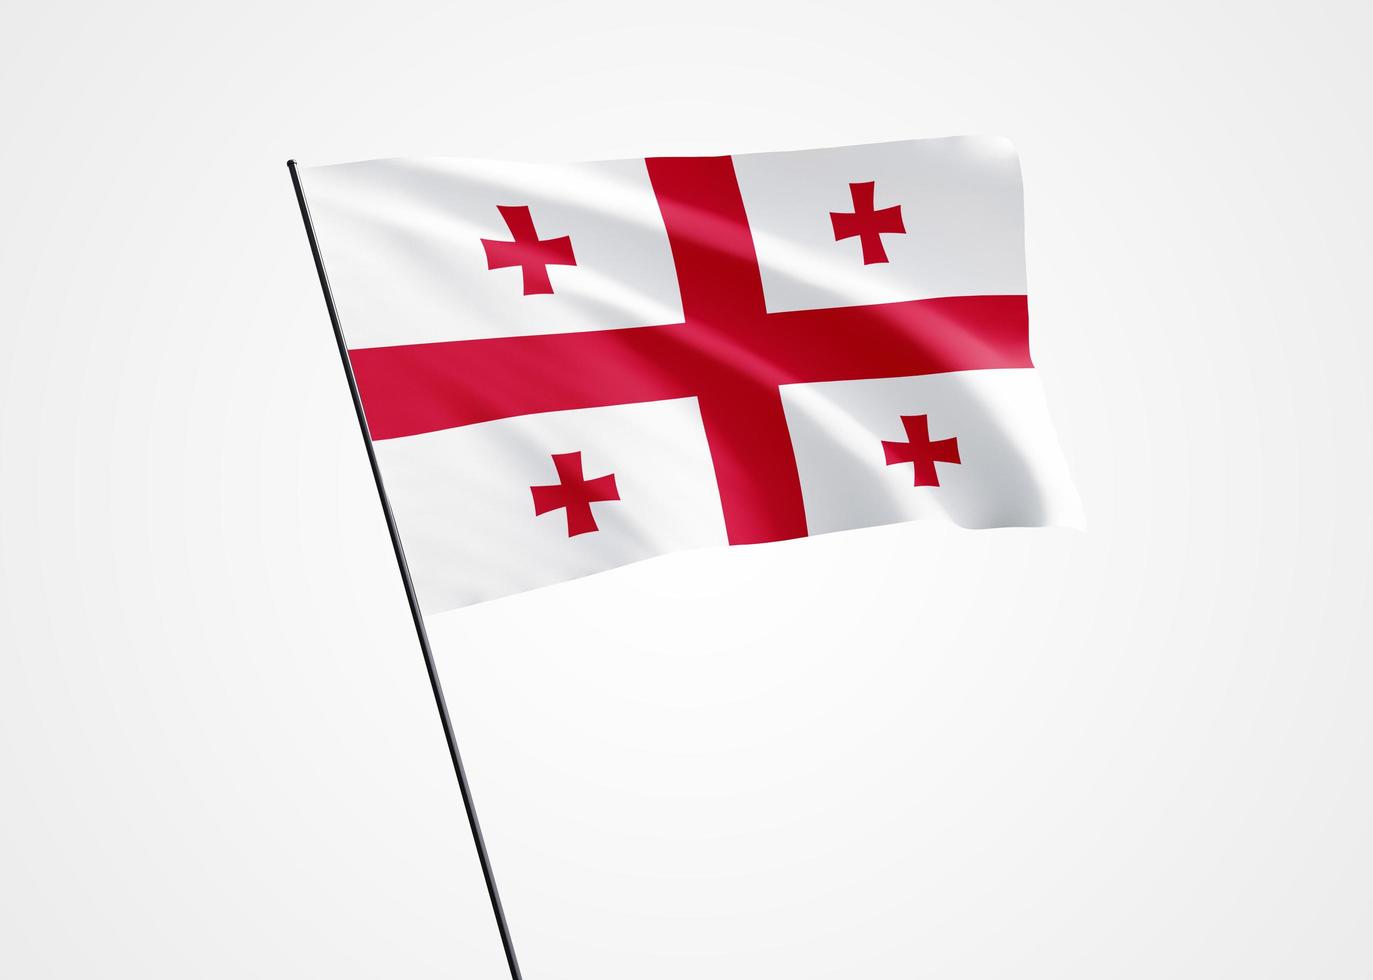 drapeau de la Géorgie volant haut dans le fond blanc isolé. 09 avril fête de l'indépendance de la Géorgie. collection de drapeaux nationaux du monde collection de drapeaux nationaux du monde photo